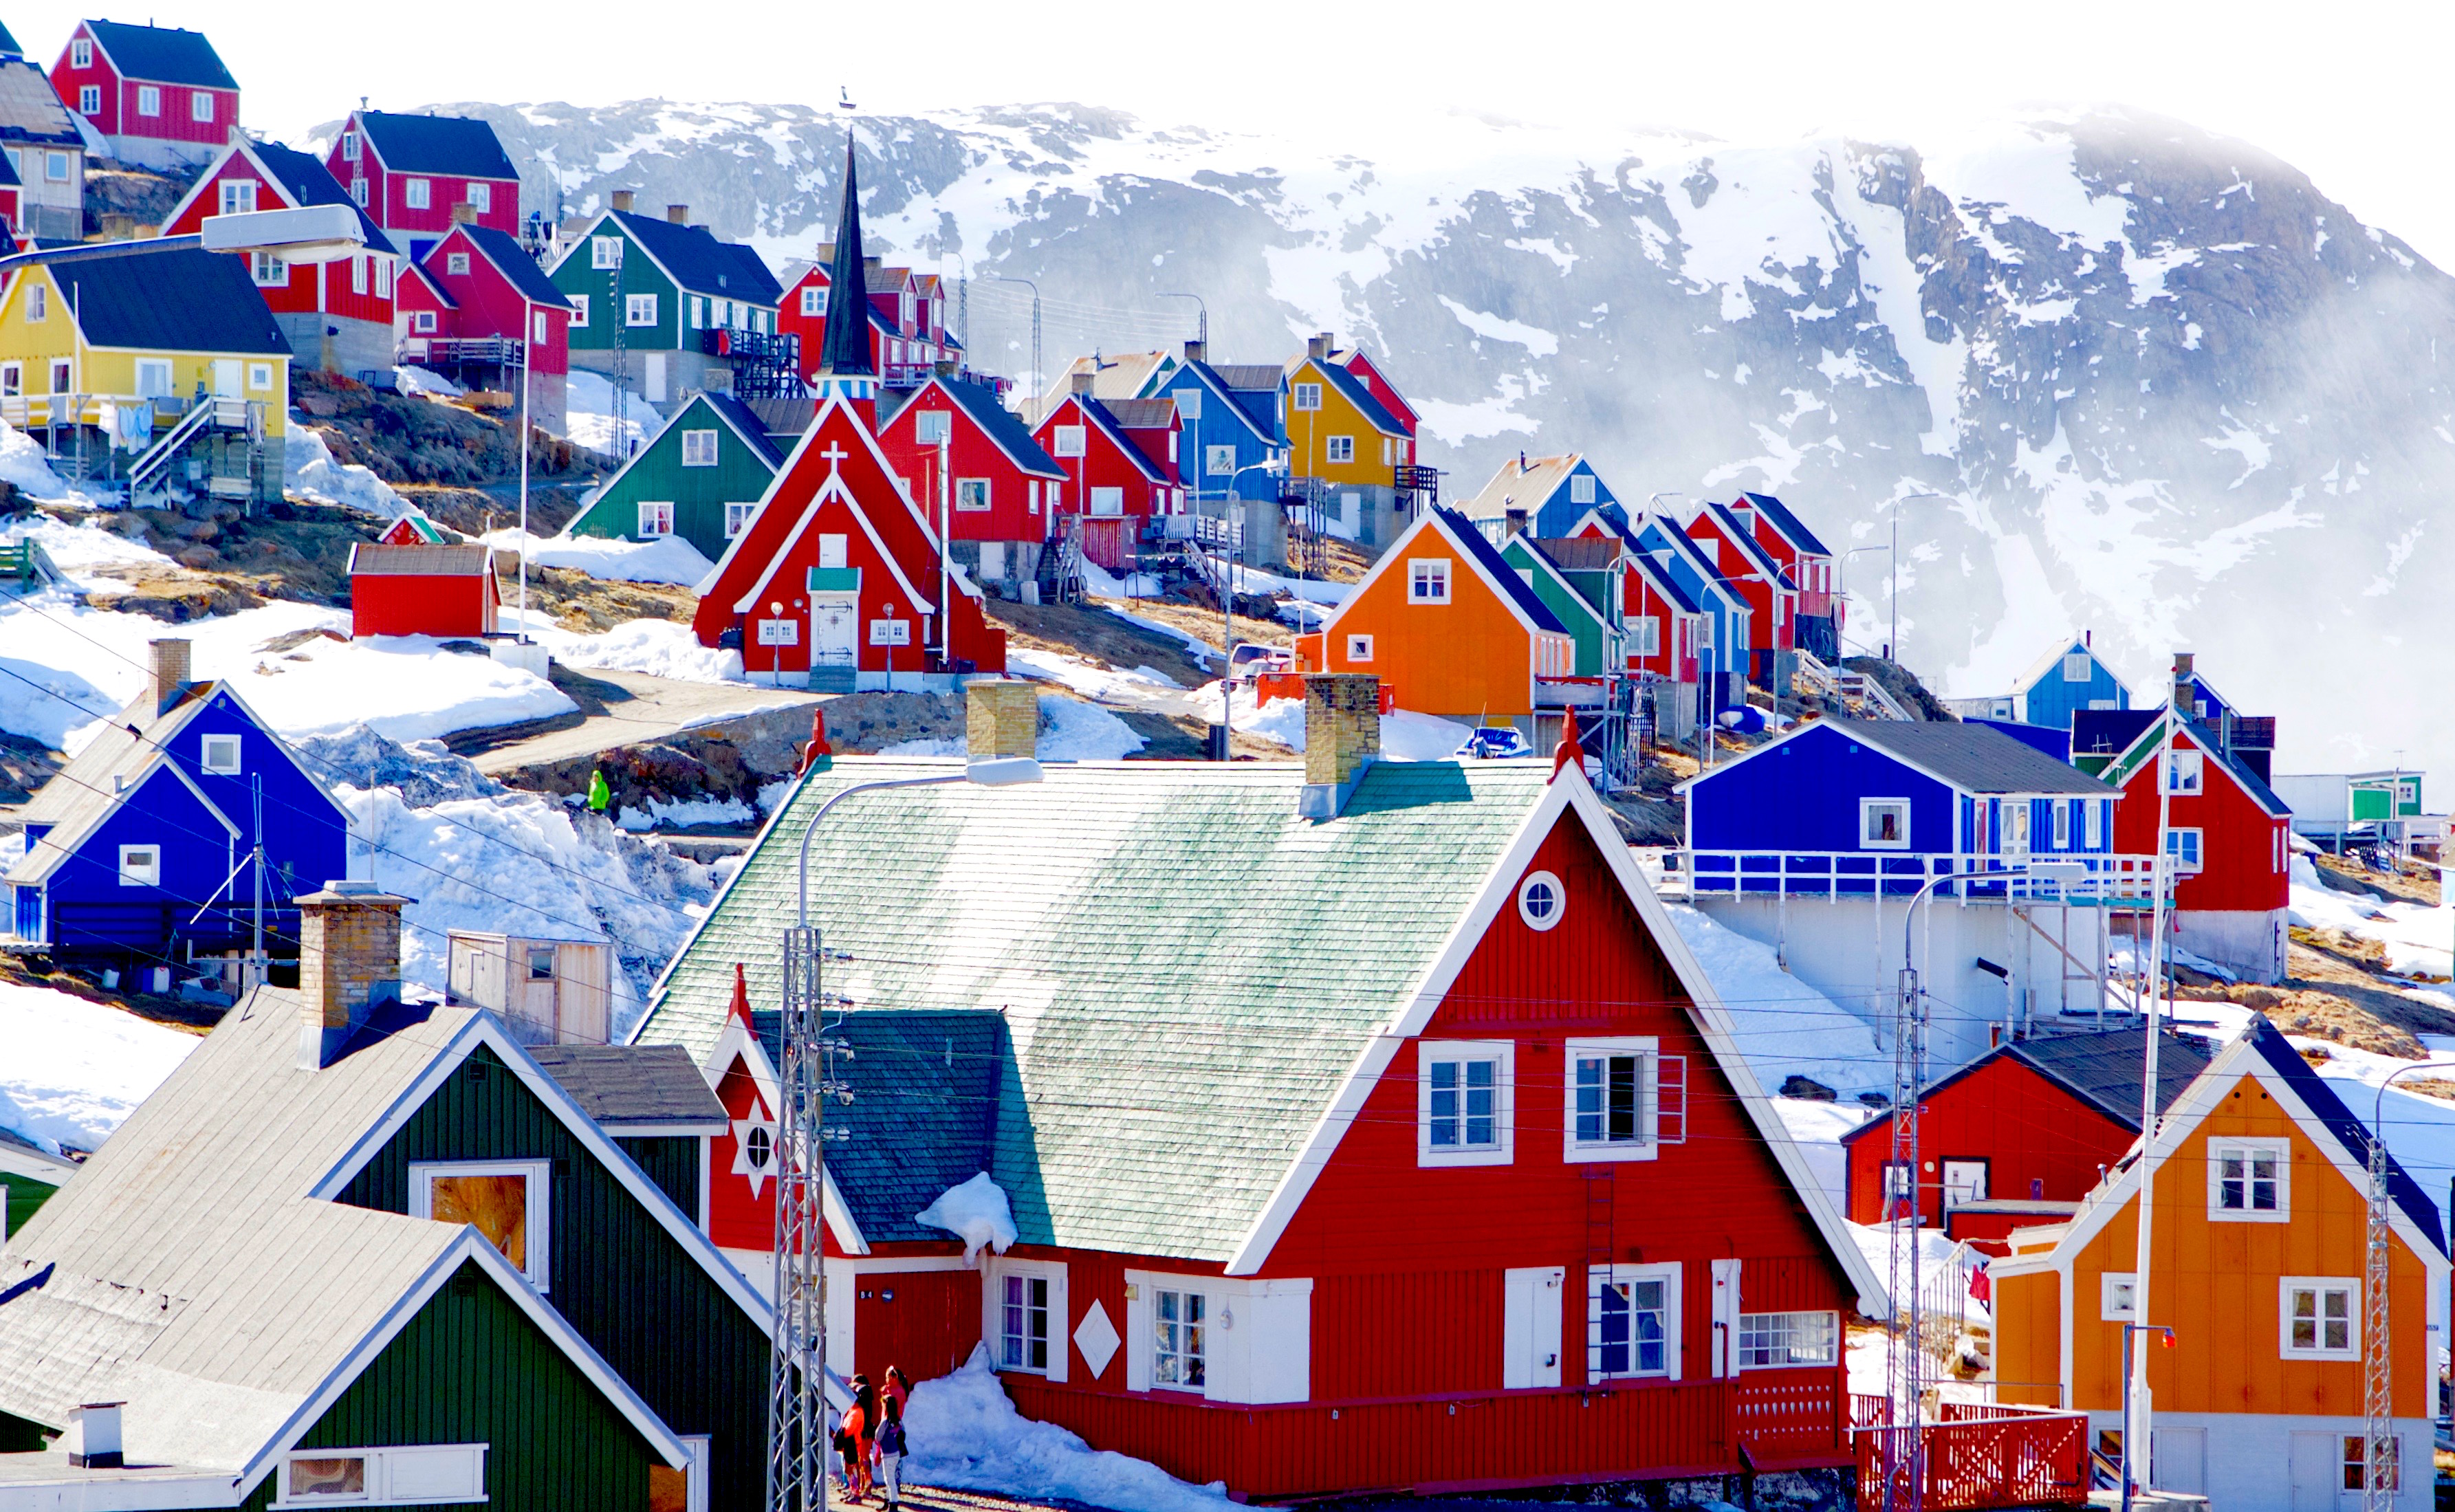 Groenland Le Mariage Pour Tous Entre En Vigueur Meme A L Eglise